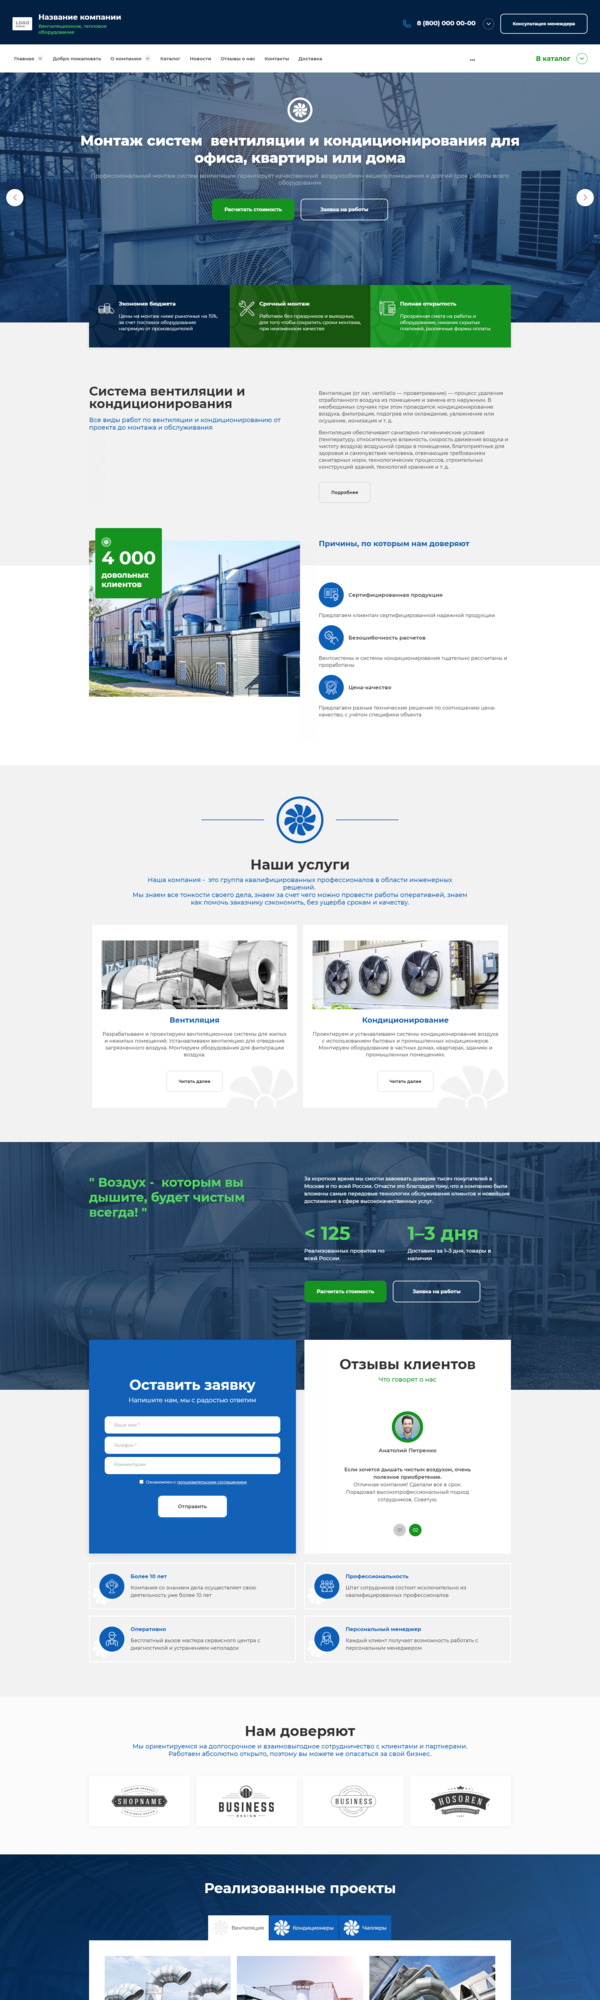 Готовый Сайт-Бизнес № 2998663 - Вентиляционное, тепловое оборудование (Десктопная версия)